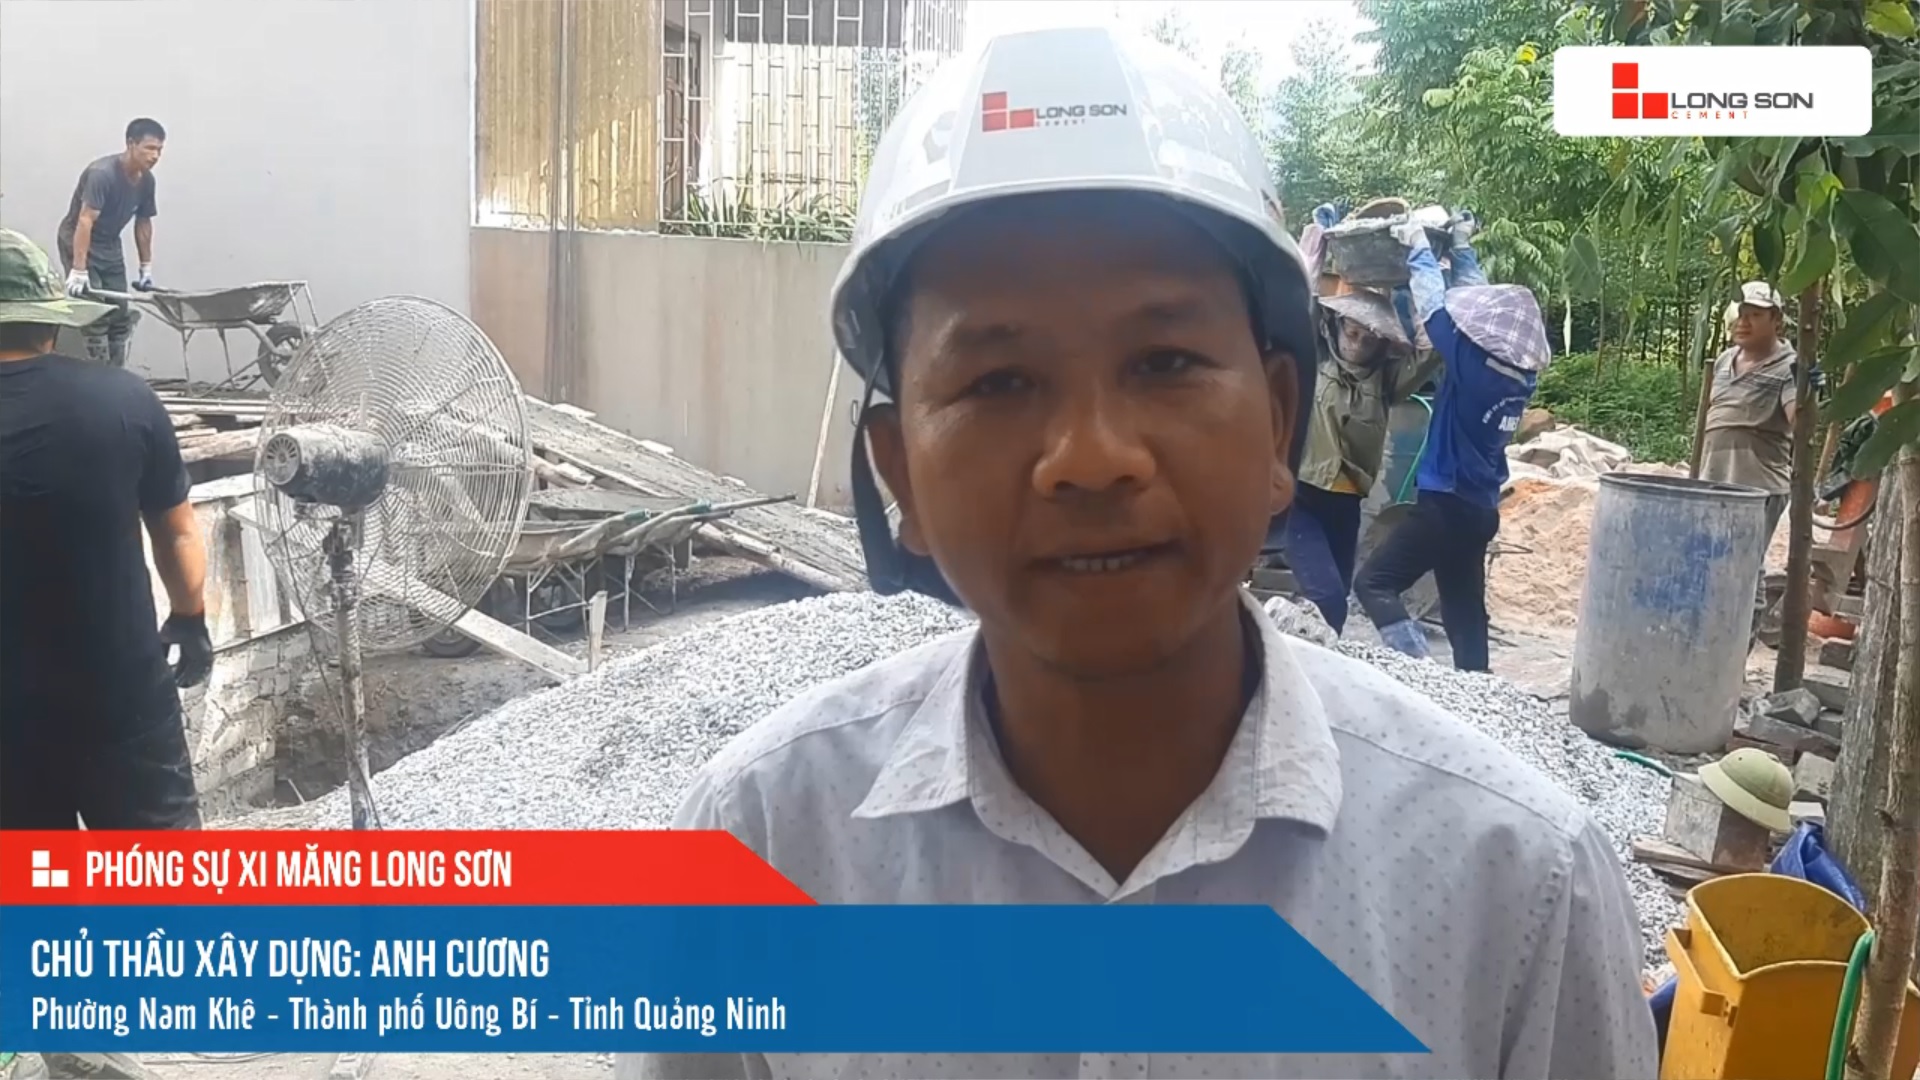 Phóng sự công trình sử dụng xi măng Long Sơn tại Quảng Ninh ngày 04/10/2021